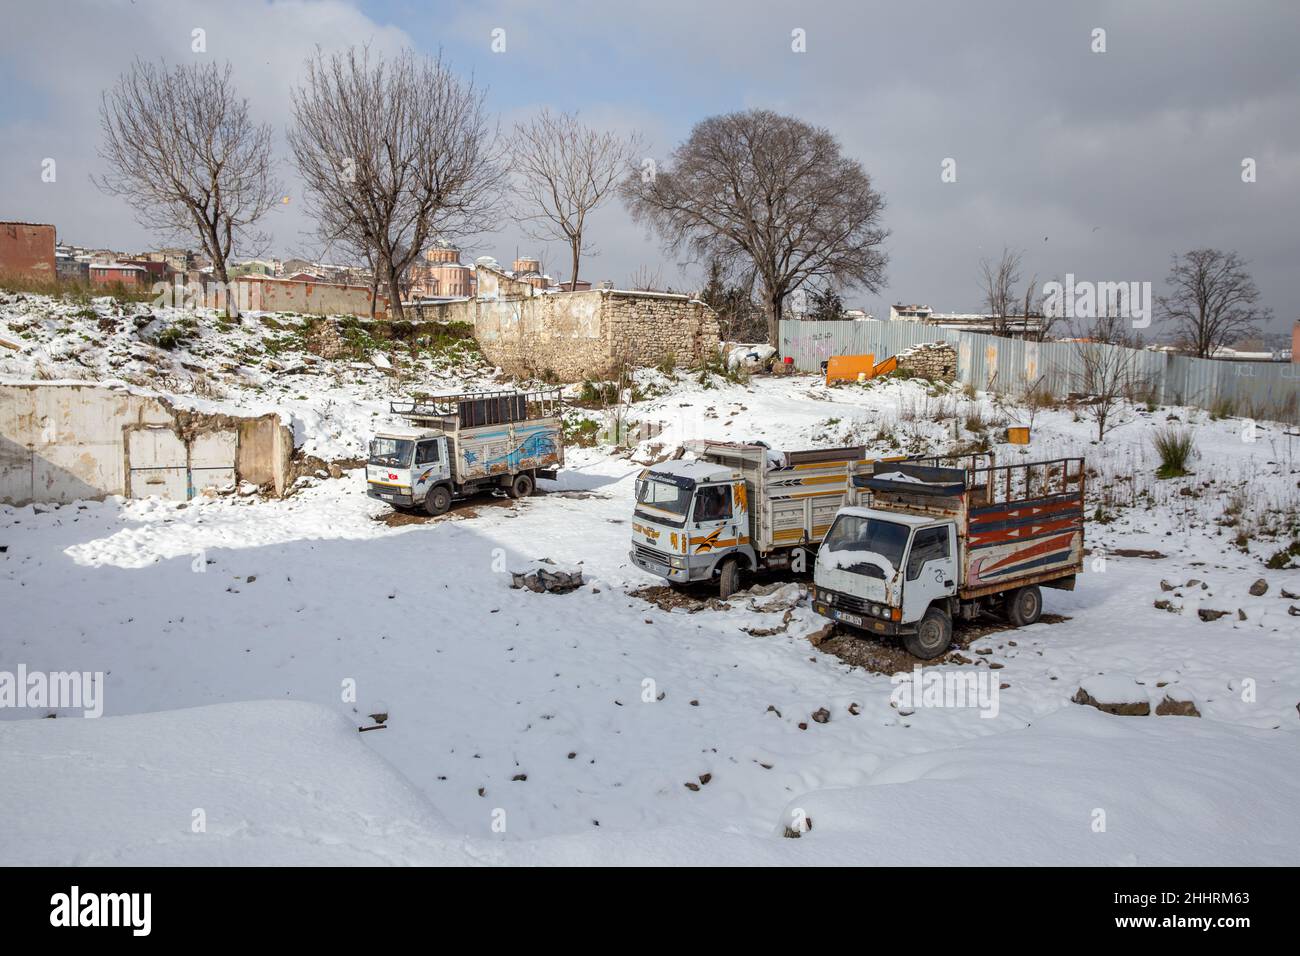 Immagini della vita quotidiana nelle aree turistiche dopo una pesante nevicata a Istanbul dopo un lungo periodo di tempo.tre camion pick-up parcheggiati sulla terra coperta di neve Foto Stock